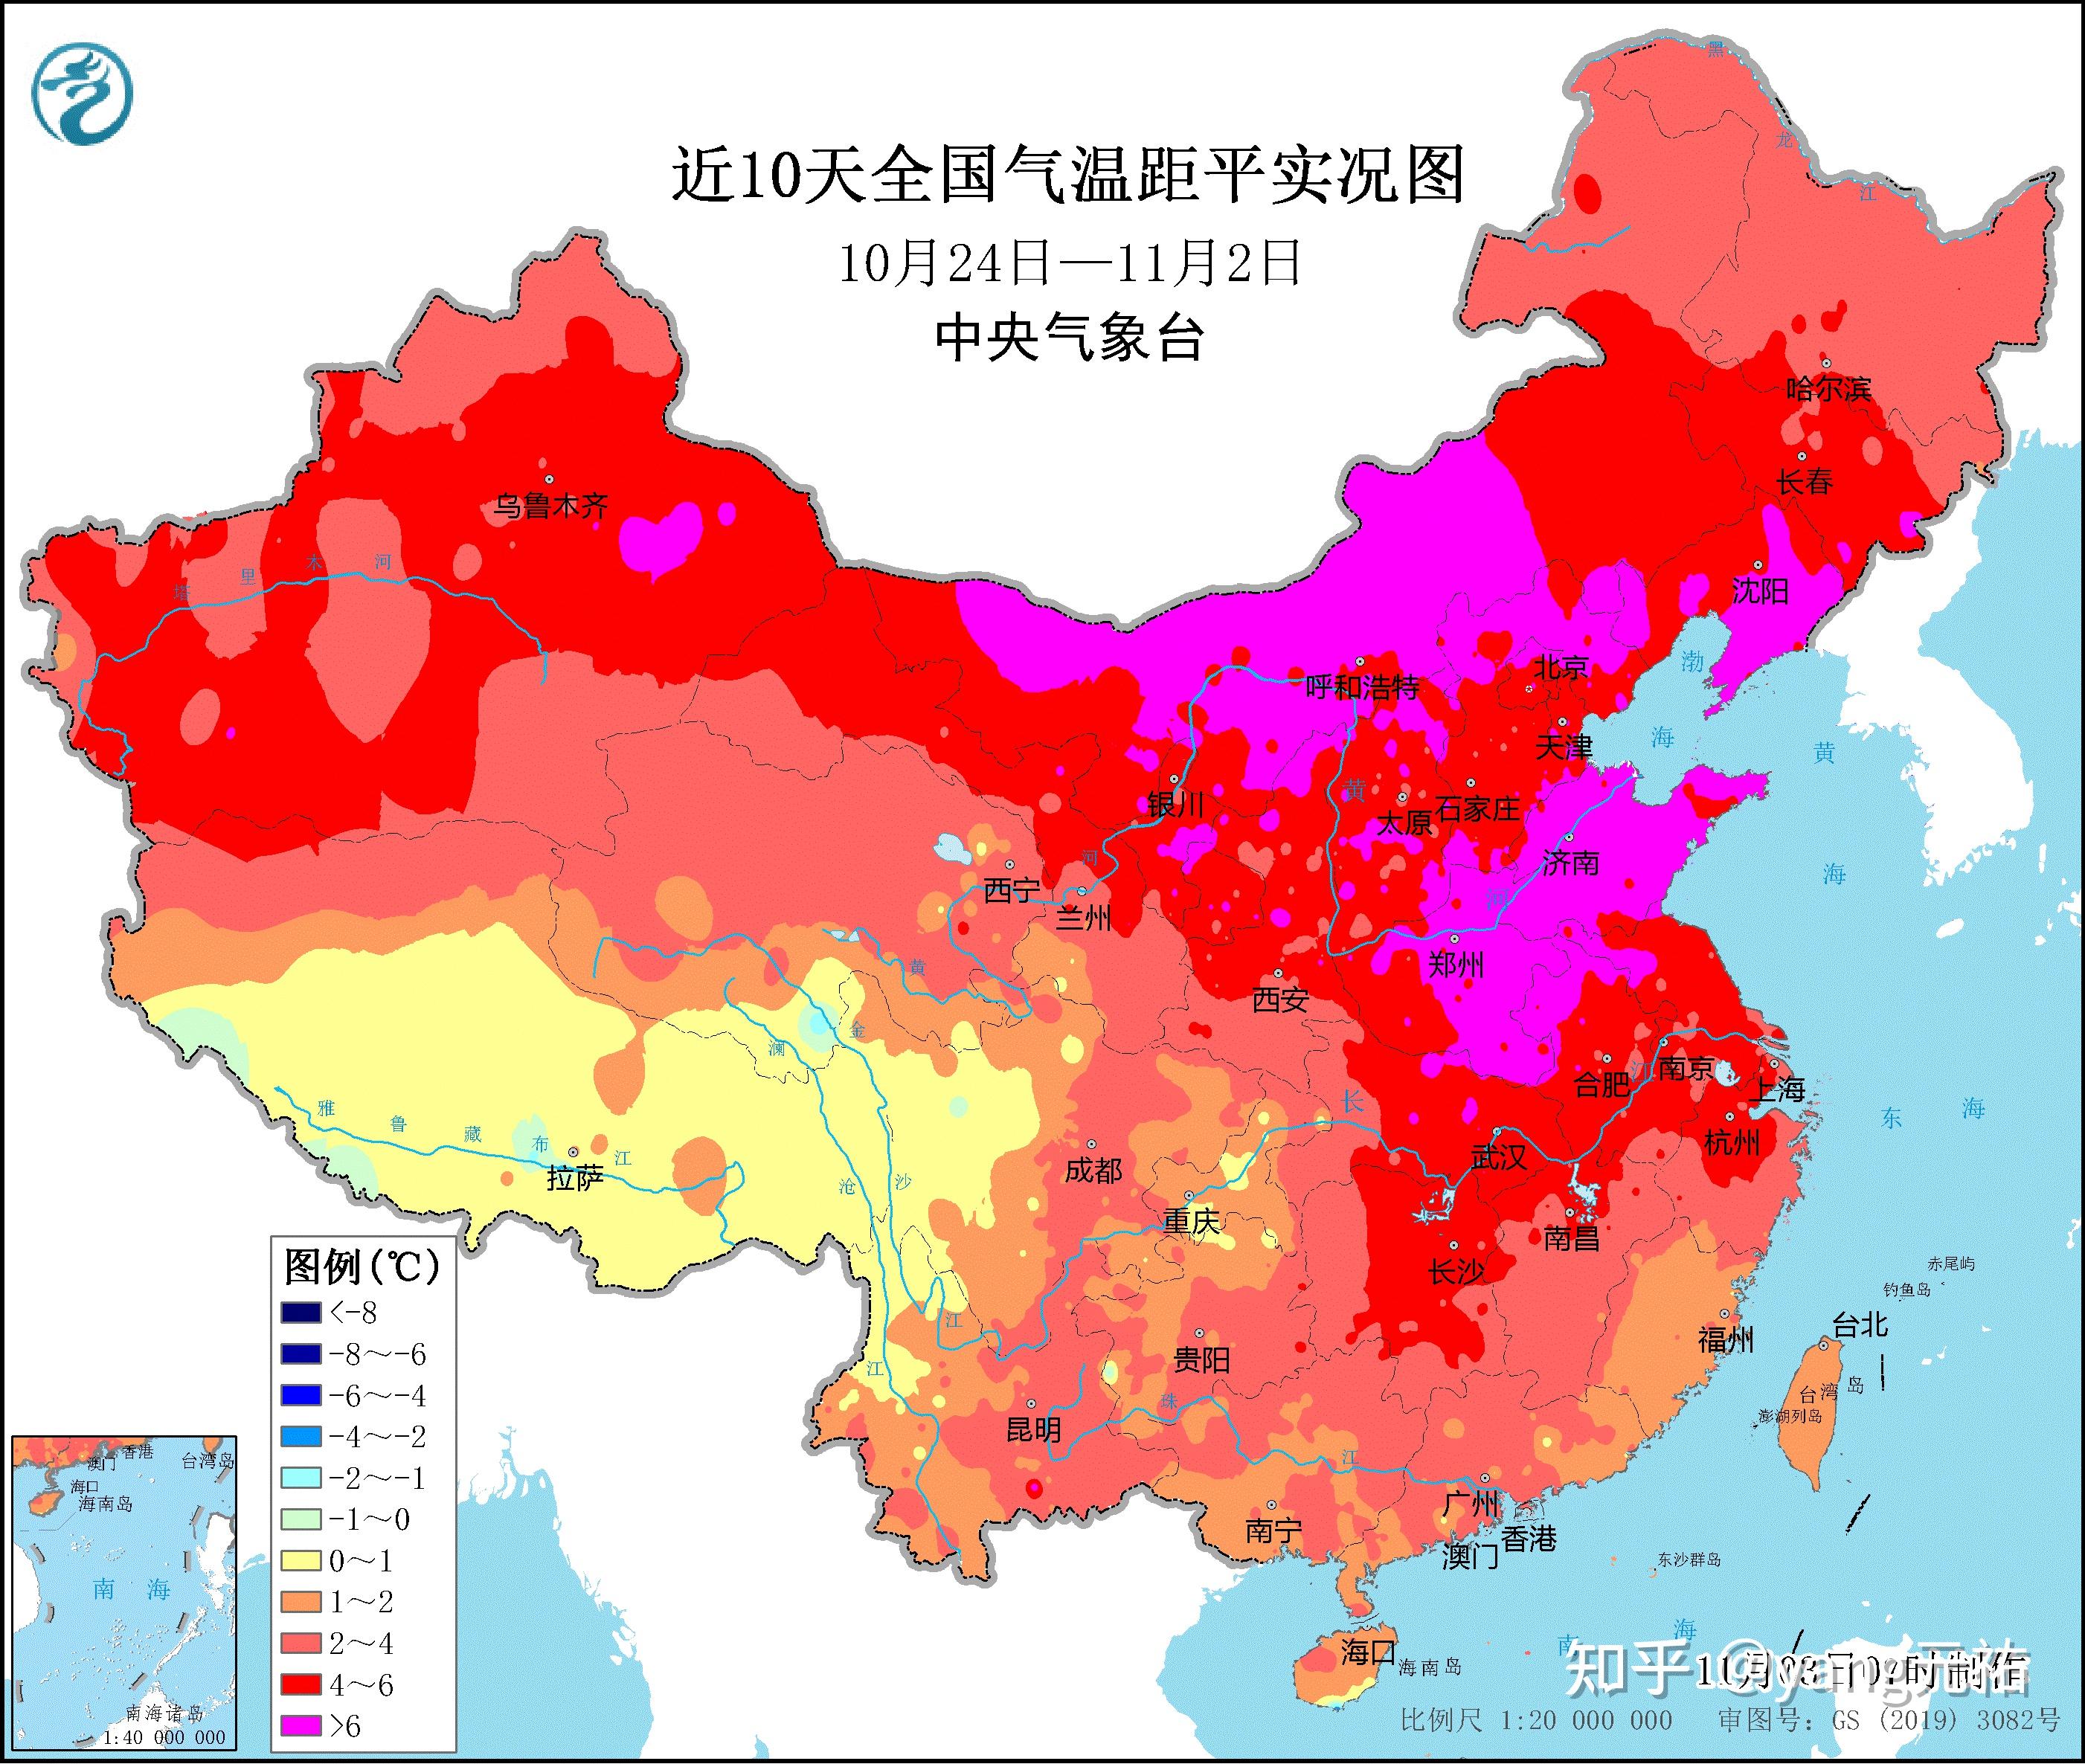 最近几个月,中国大部分地区的气温持续偏高,尤其是10月份全国平均气温